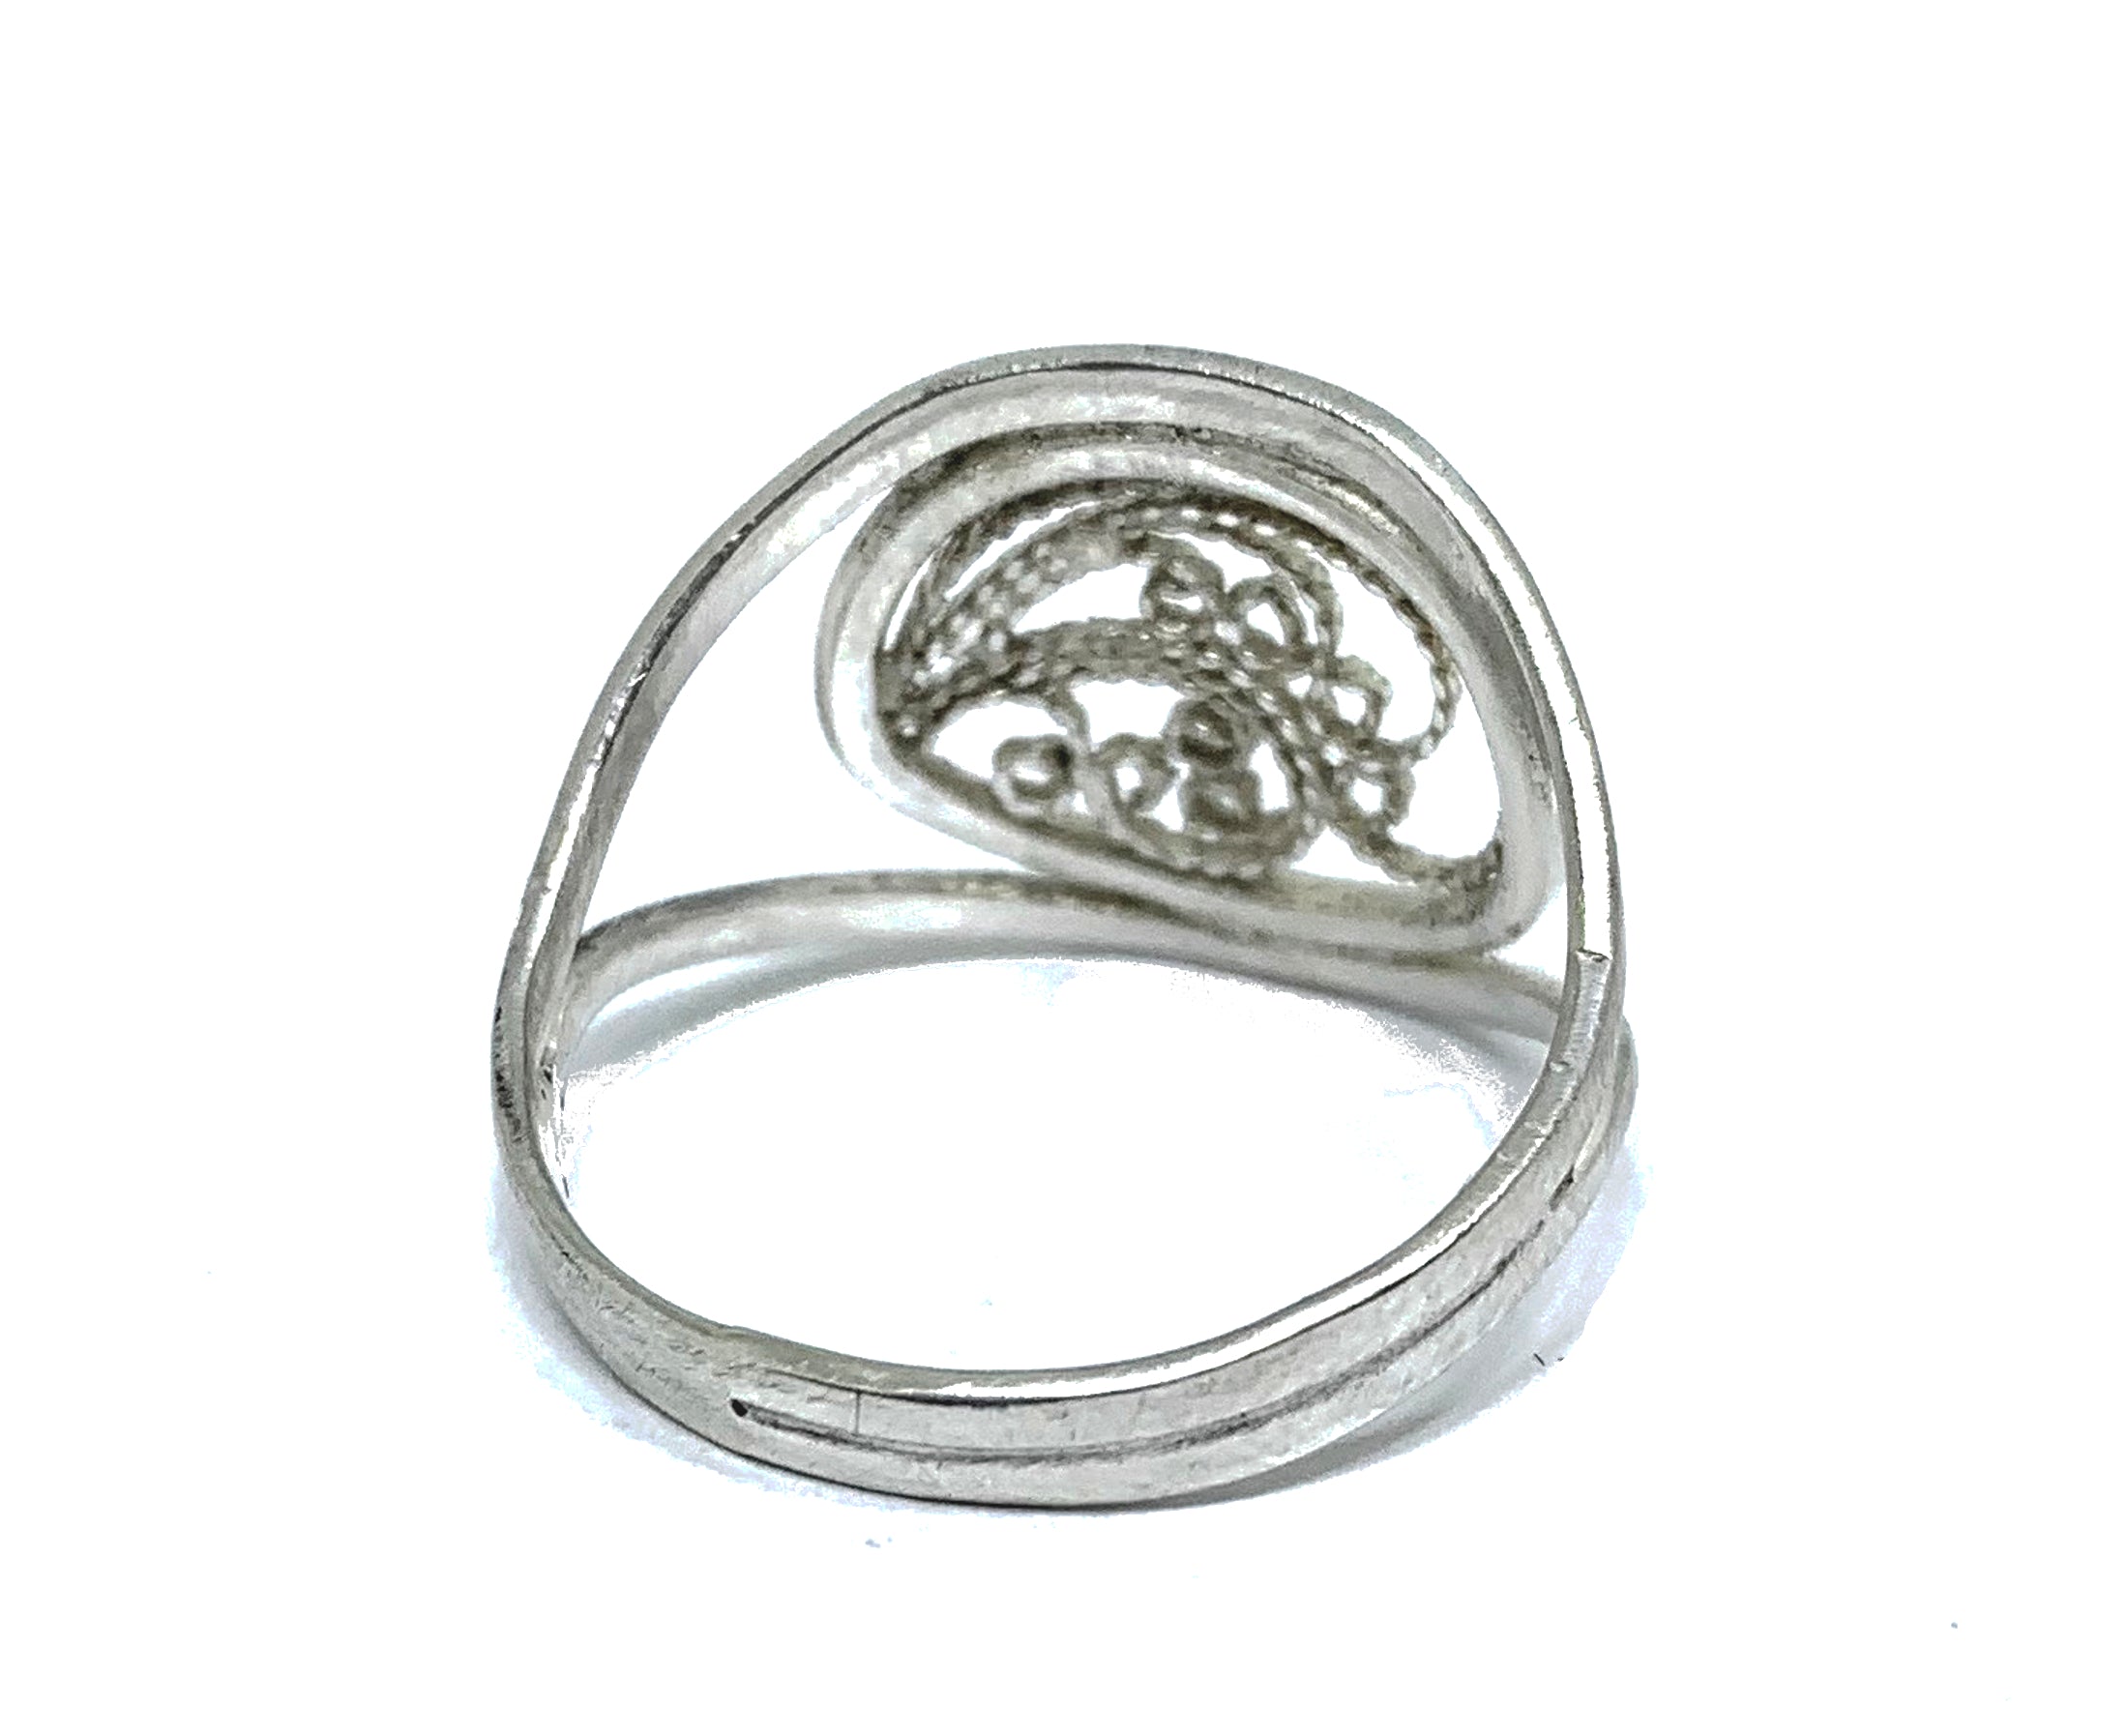 Filigree Ring - Size 8.5